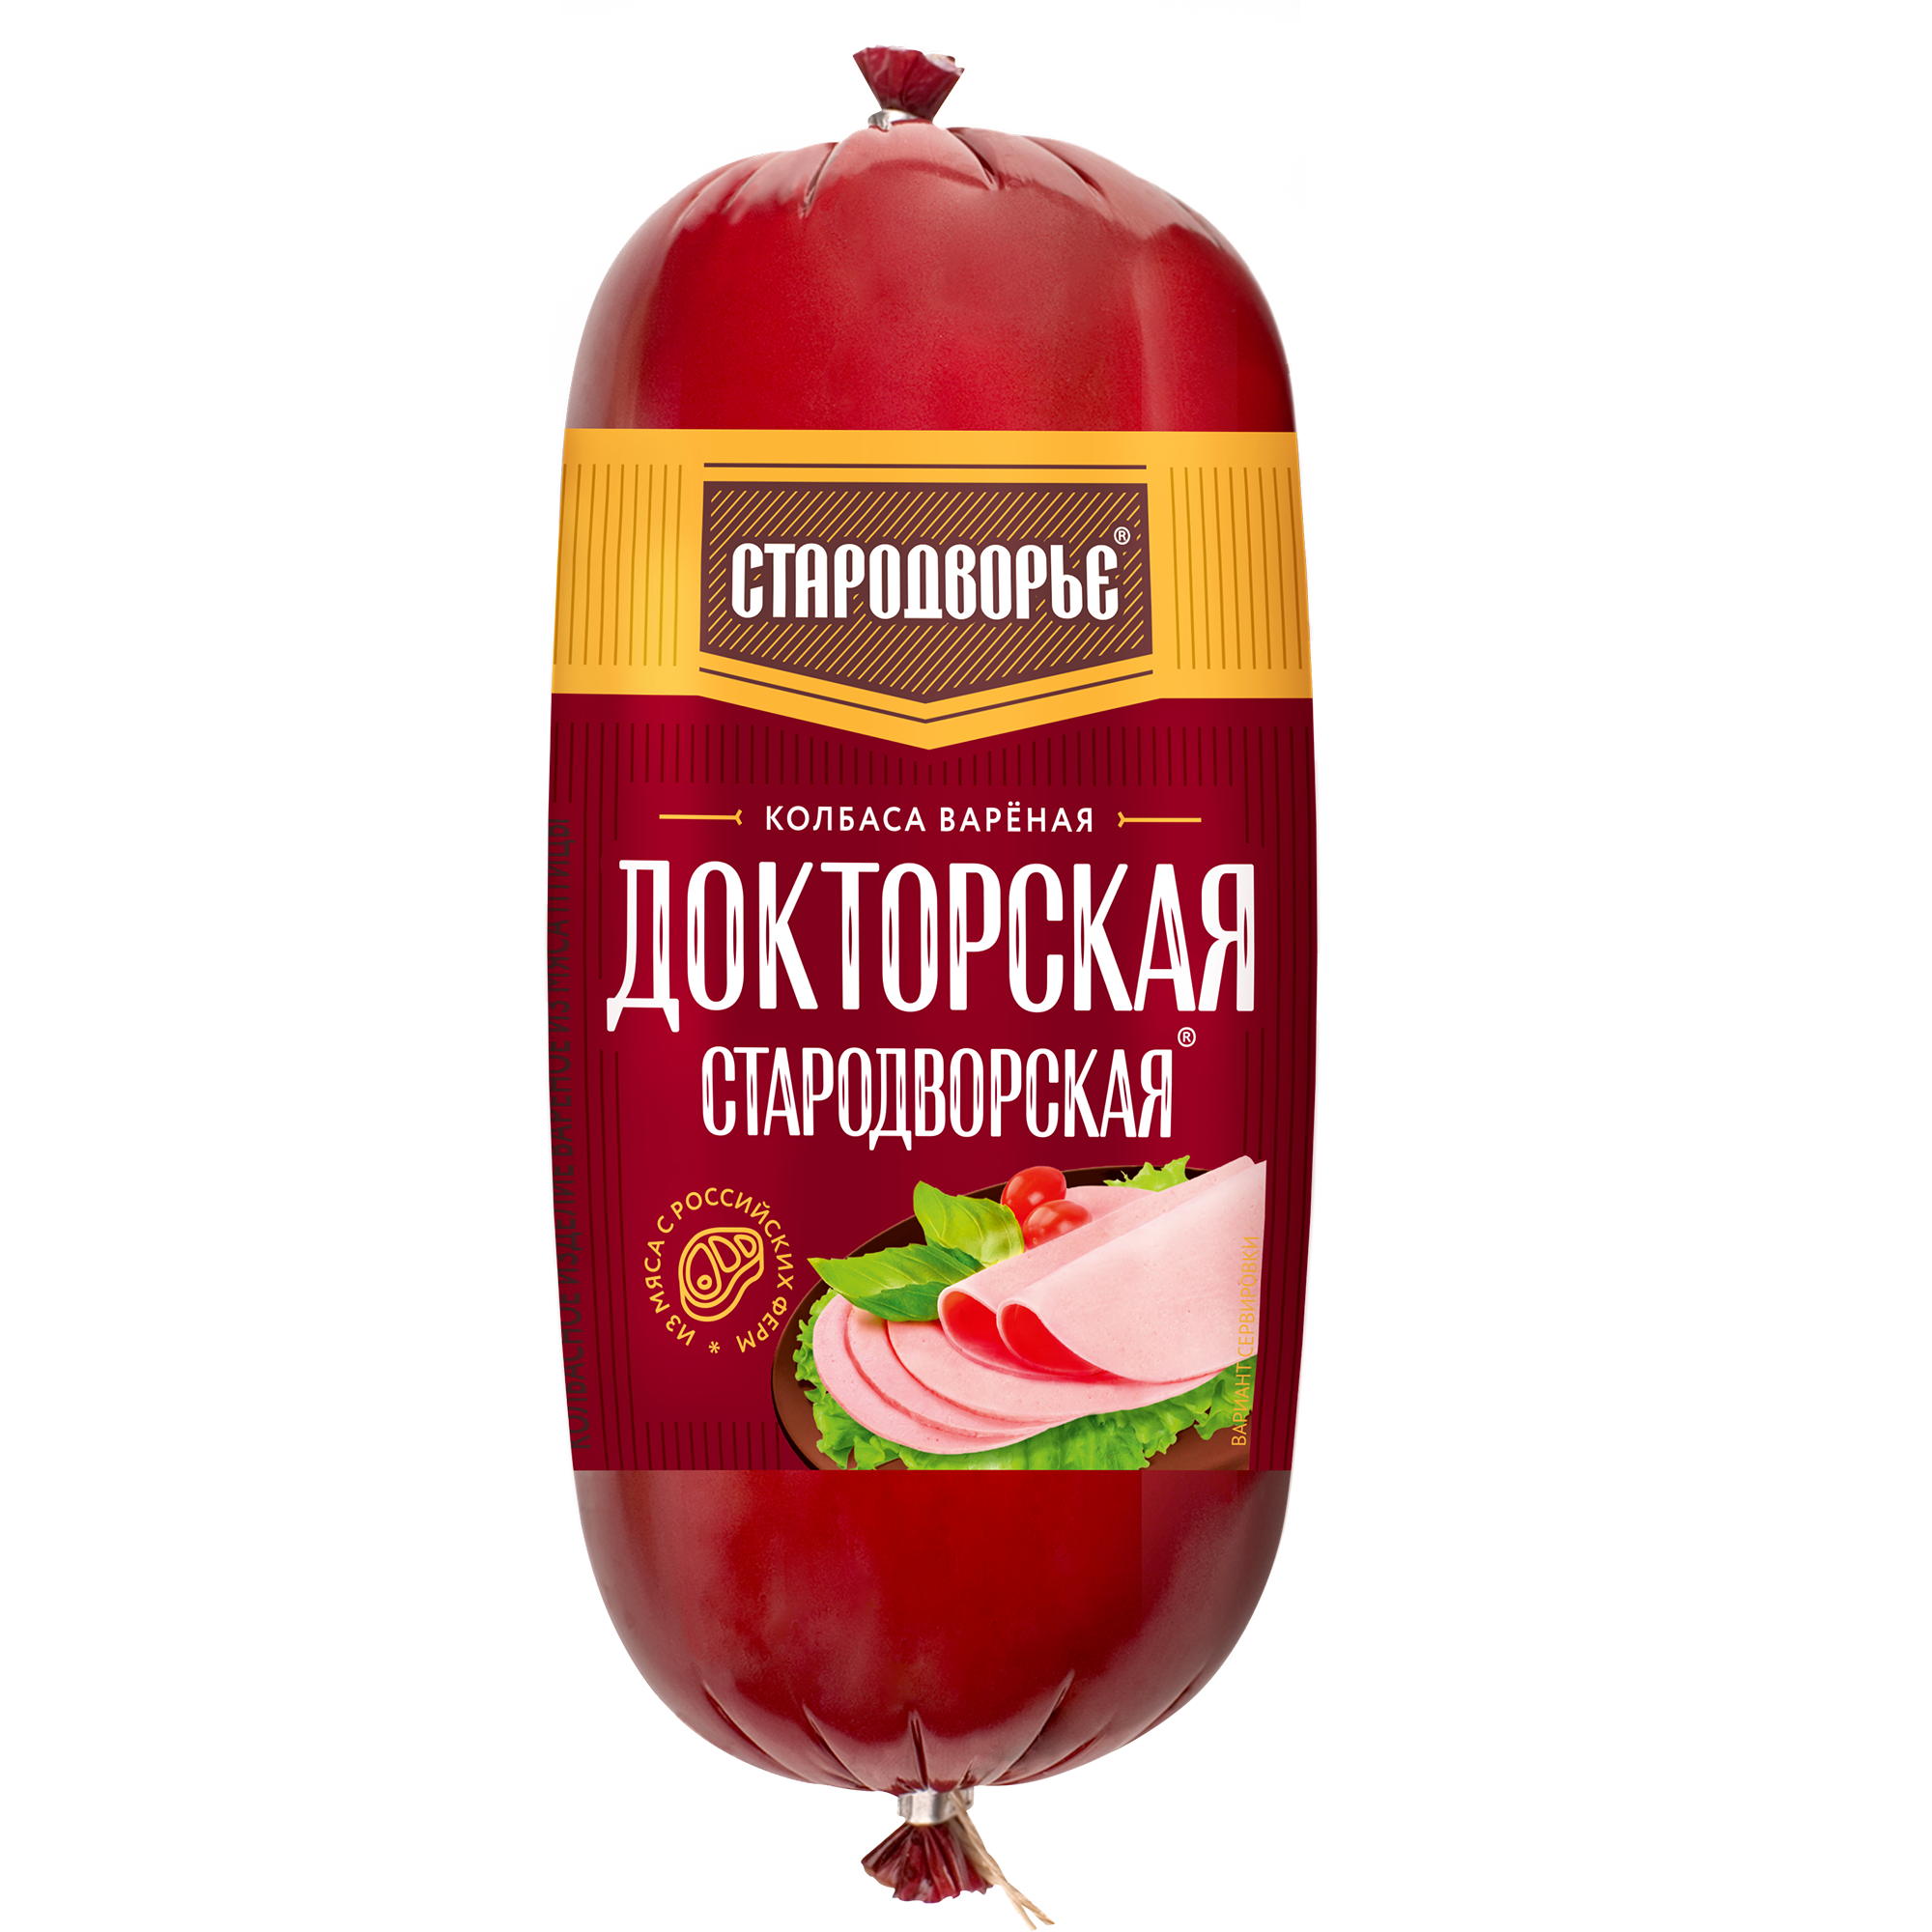 Колбаса вареная Докторская Стародворская 0,5 кг